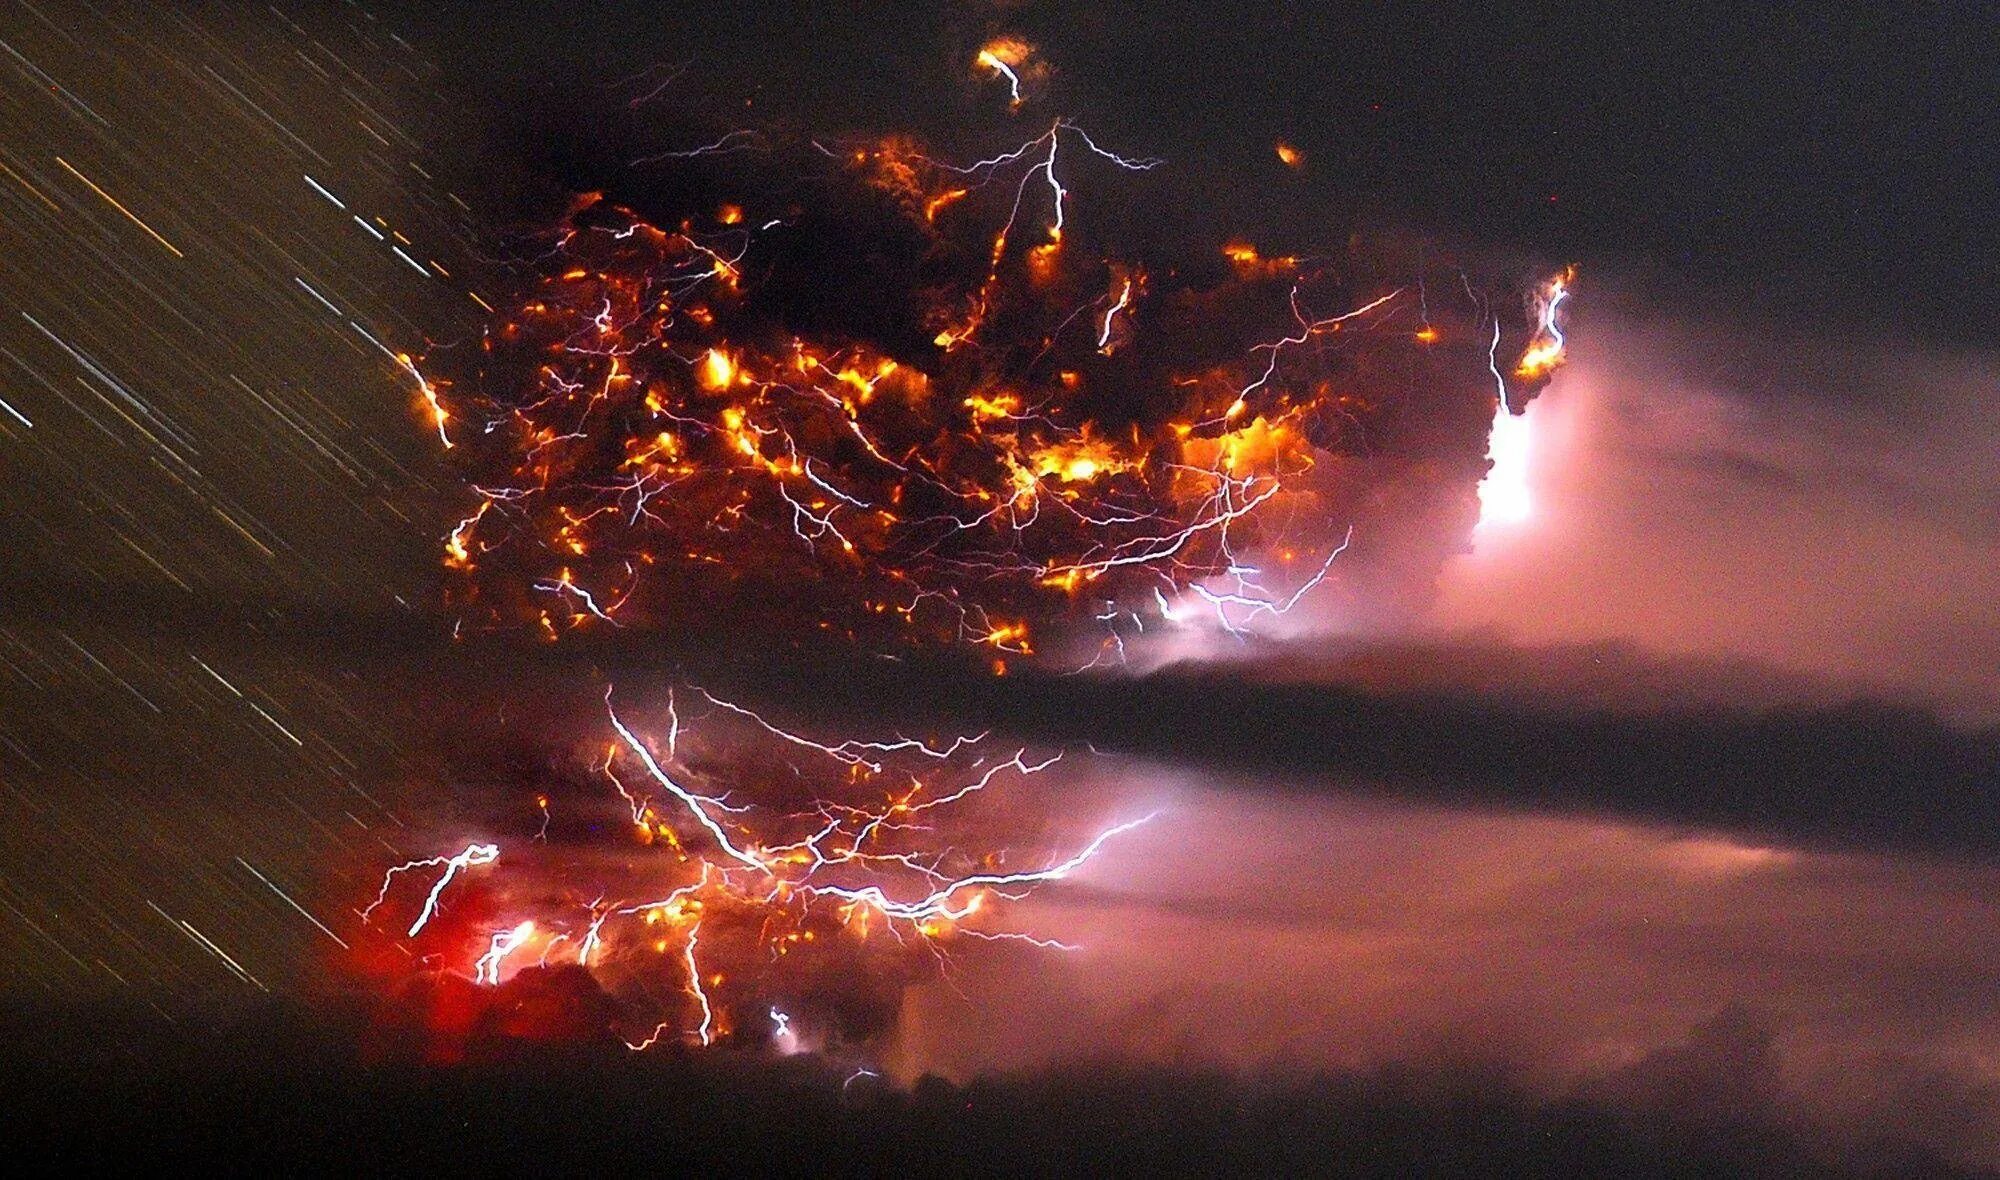 Франциско Негрони гроза вулкан. Извержение вулкана Пуйеуэ 2011. Огненный смерч (Огненный Торнадо. Франциско Негрони грязная гроза. Ветер гонящий пыль